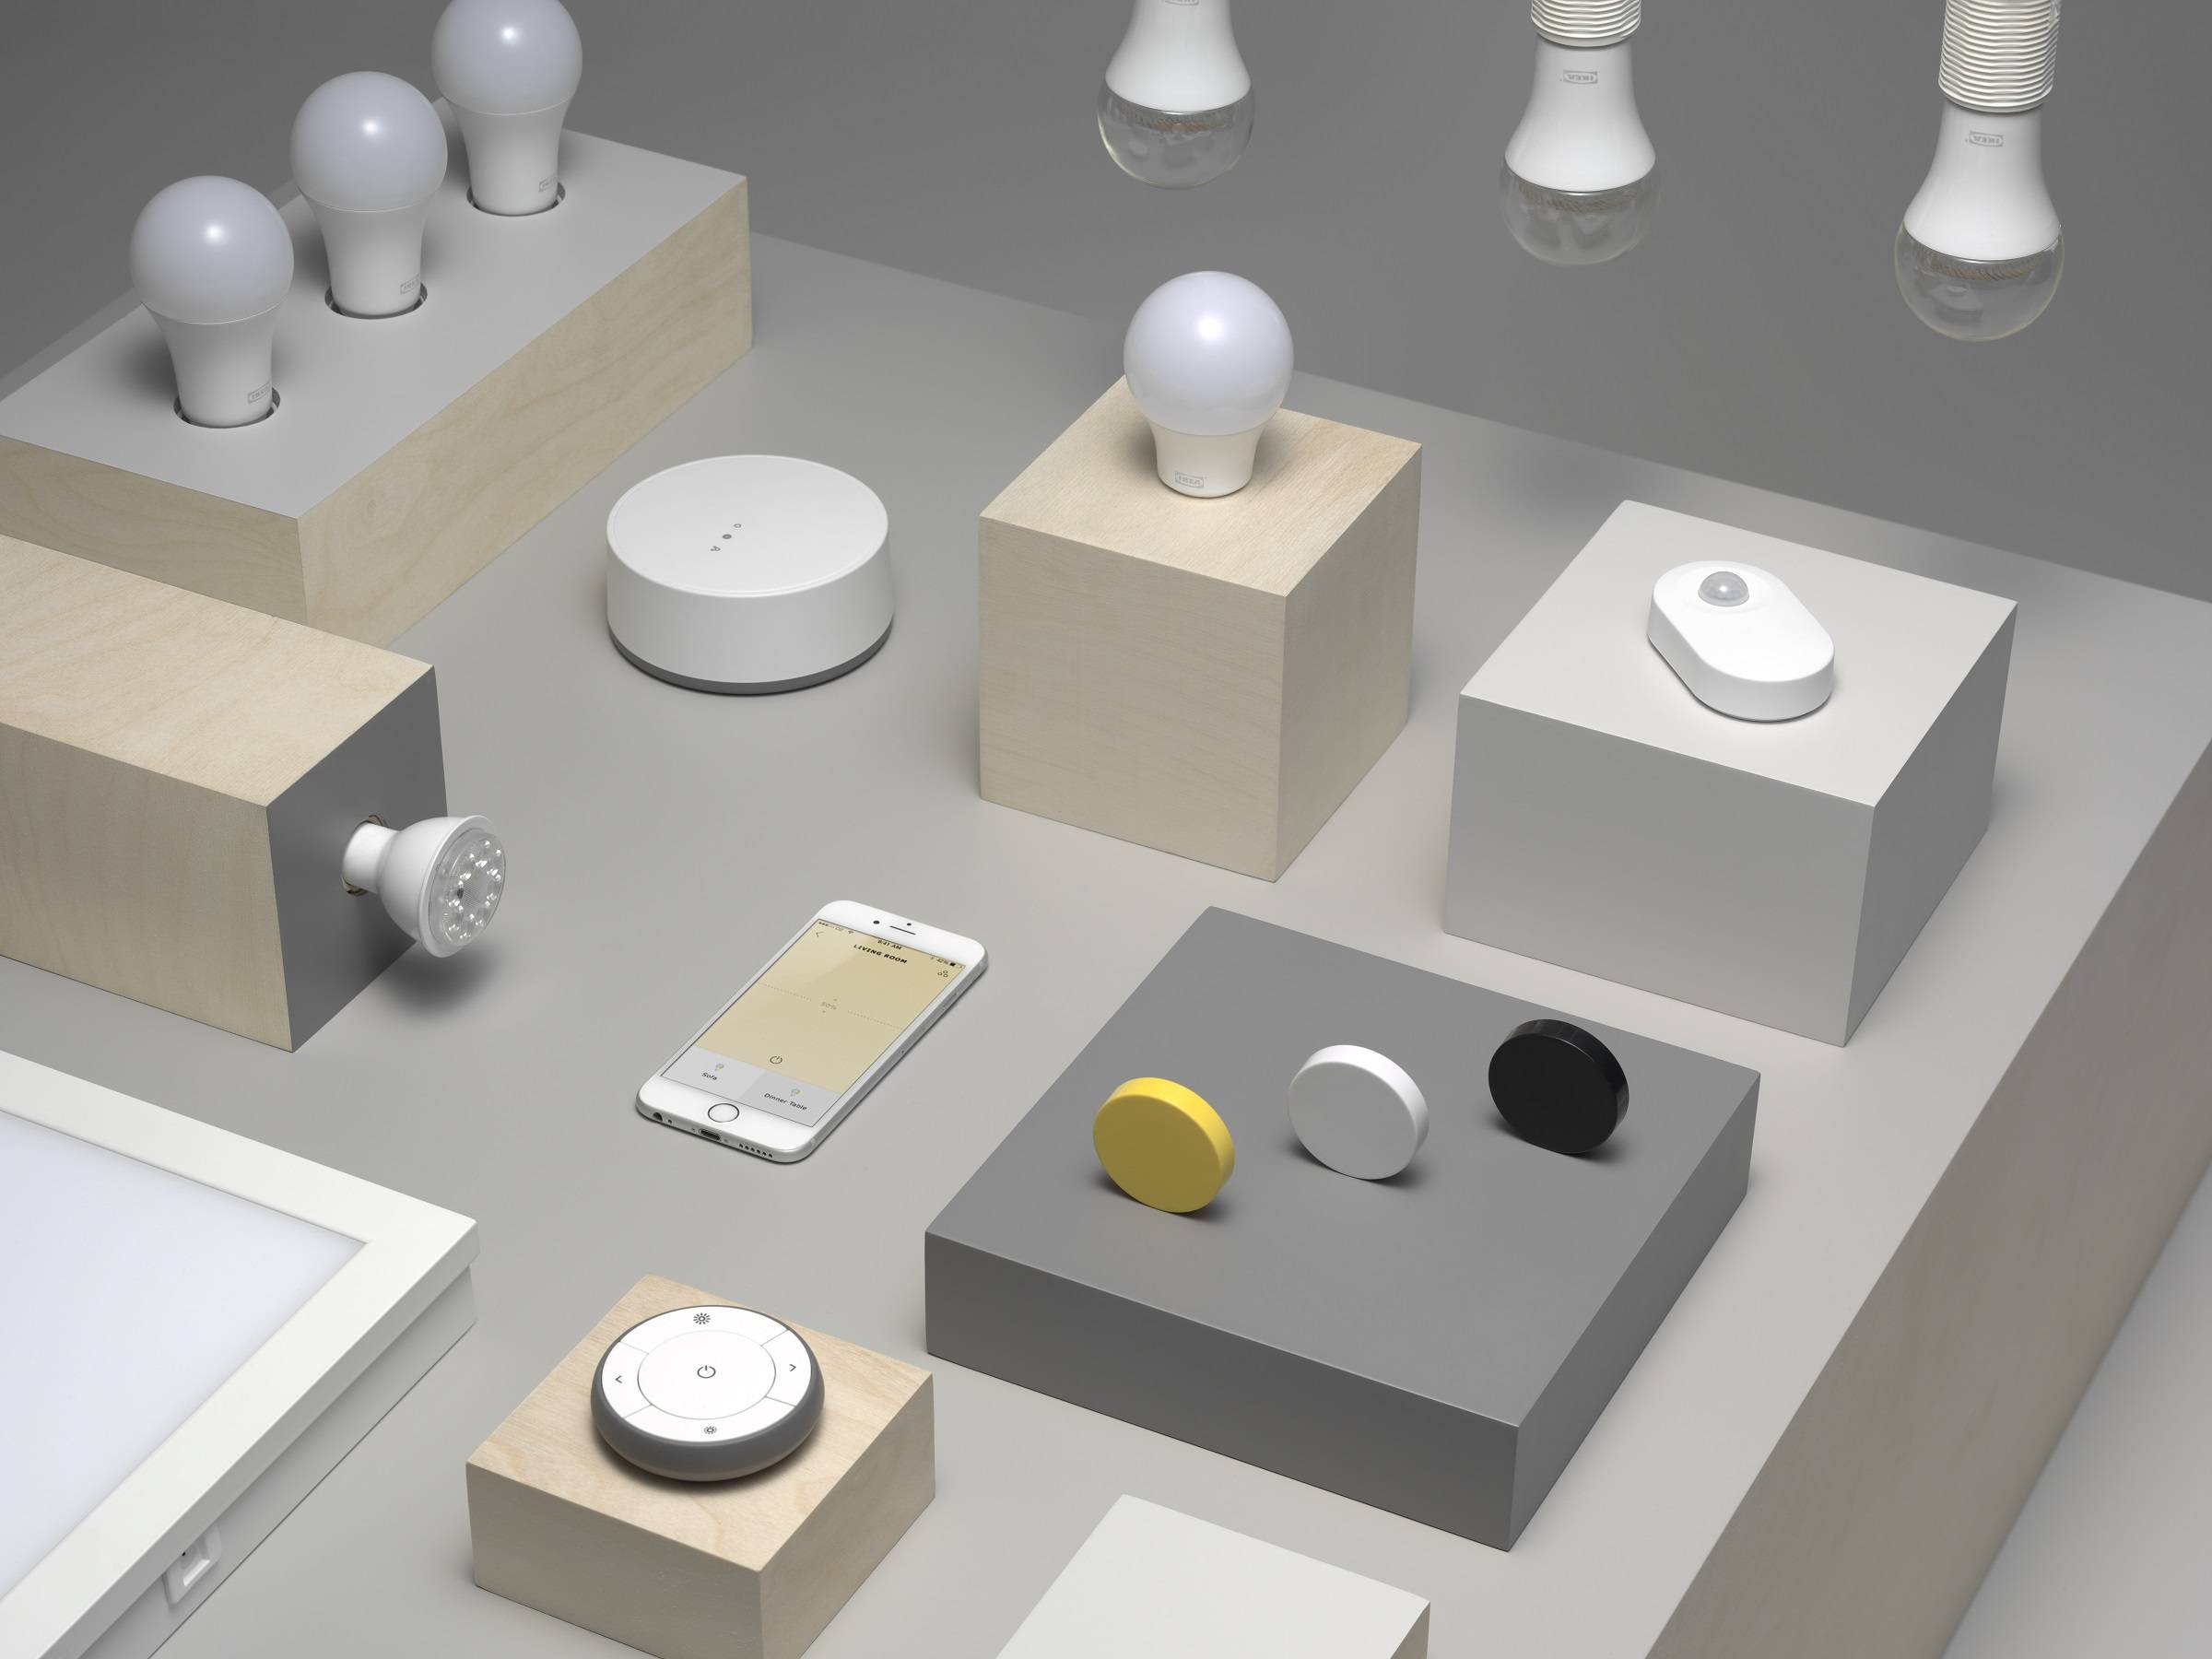 Ikea avslöjar uppdateringar på sina SmartHome-enheter år 2020 1